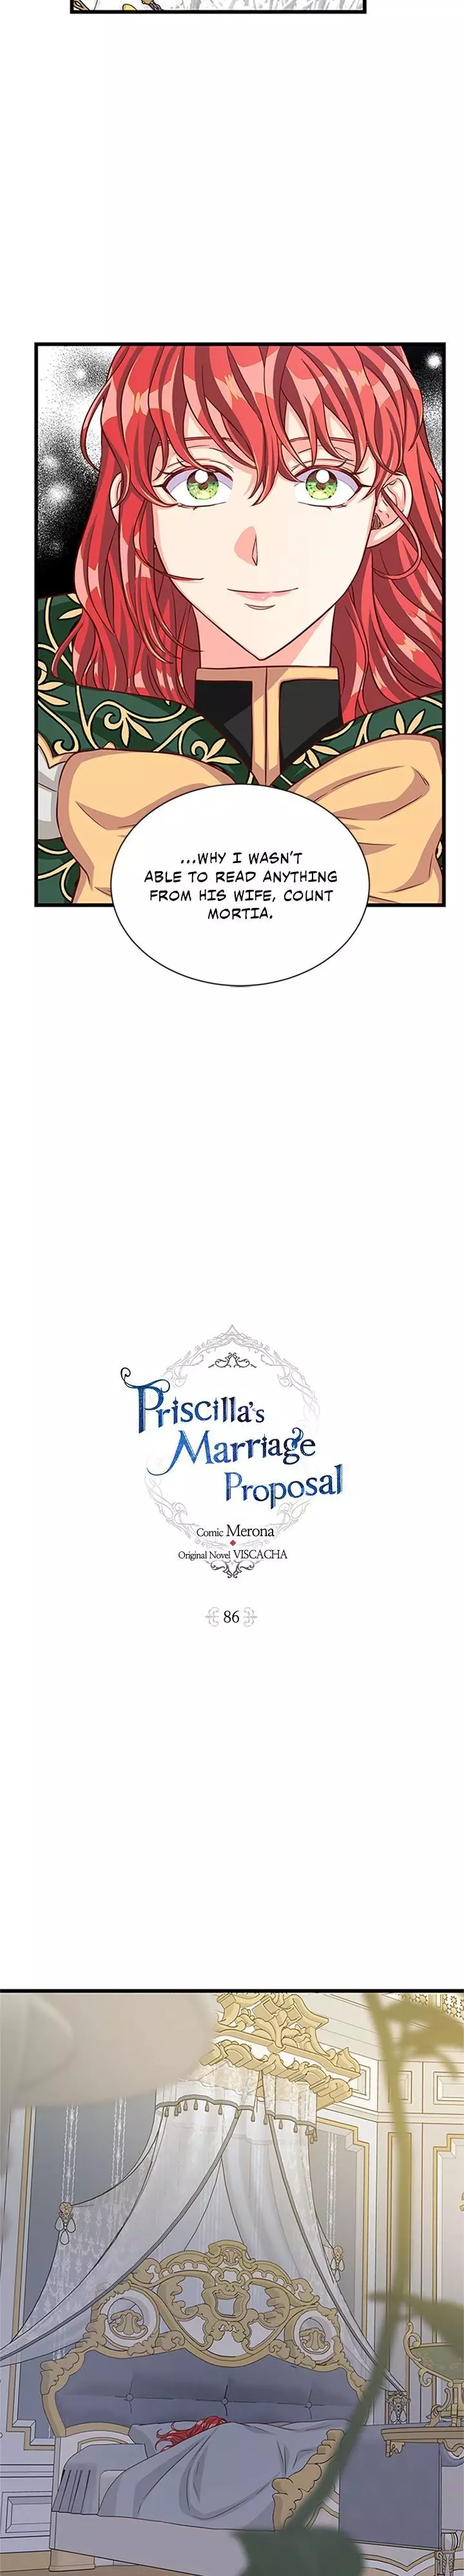 Priscilla's Marriage Request - 86 page 6-a1085a9f